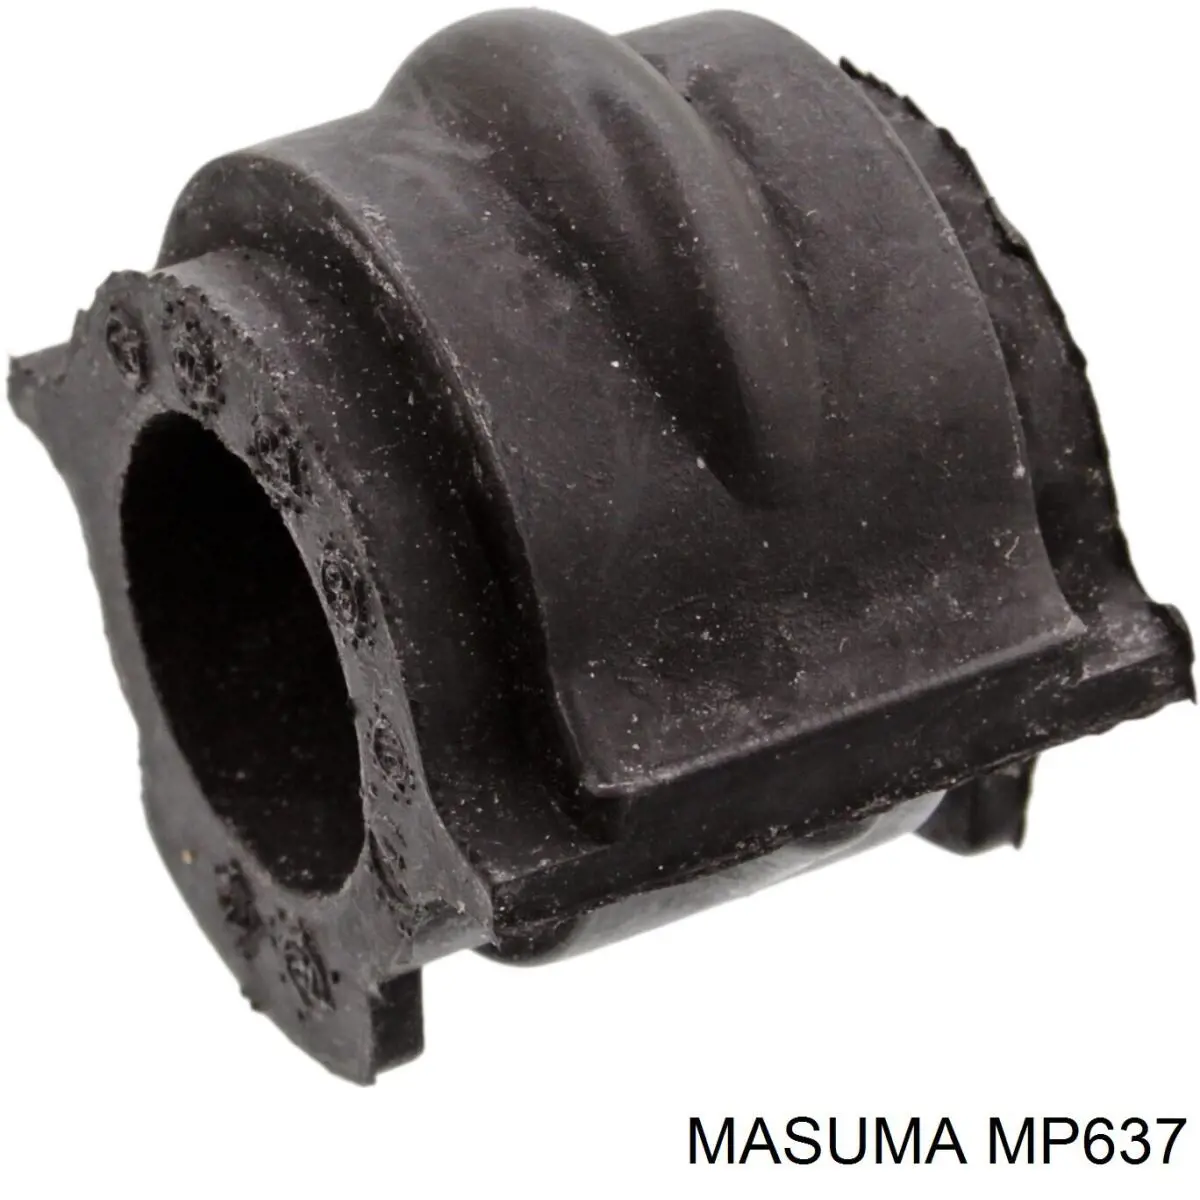 MP637 Masuma casquillo de barra estabilizadora delantera